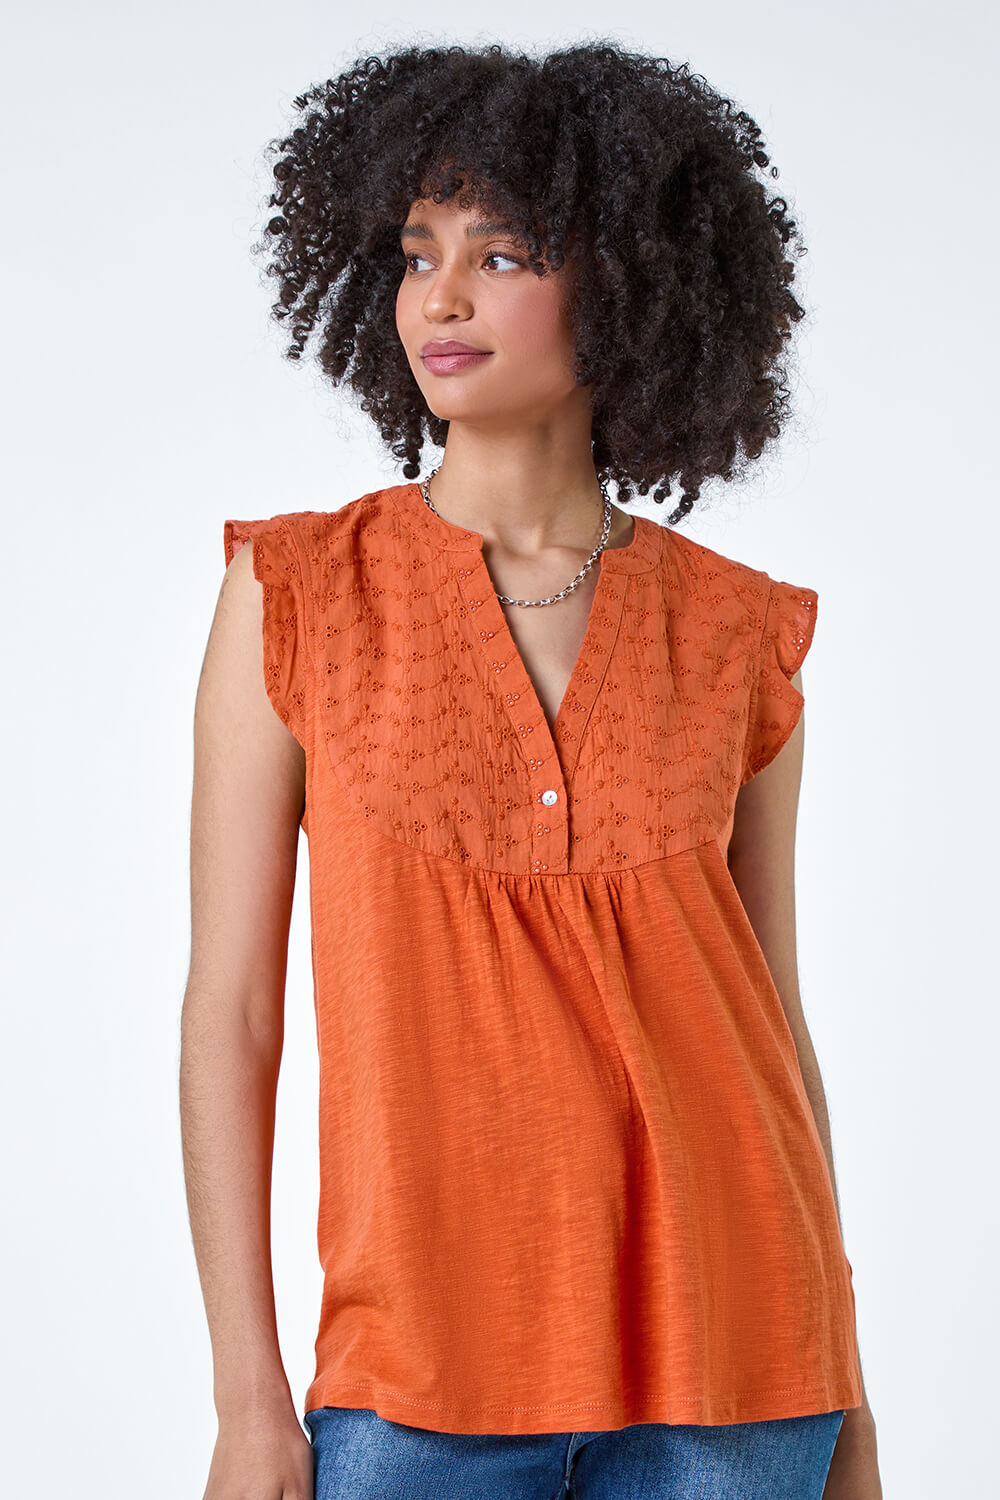 ORANGE Embroidered Frill Cotton Blend V-Neck Vest Top, Image 2 of 5